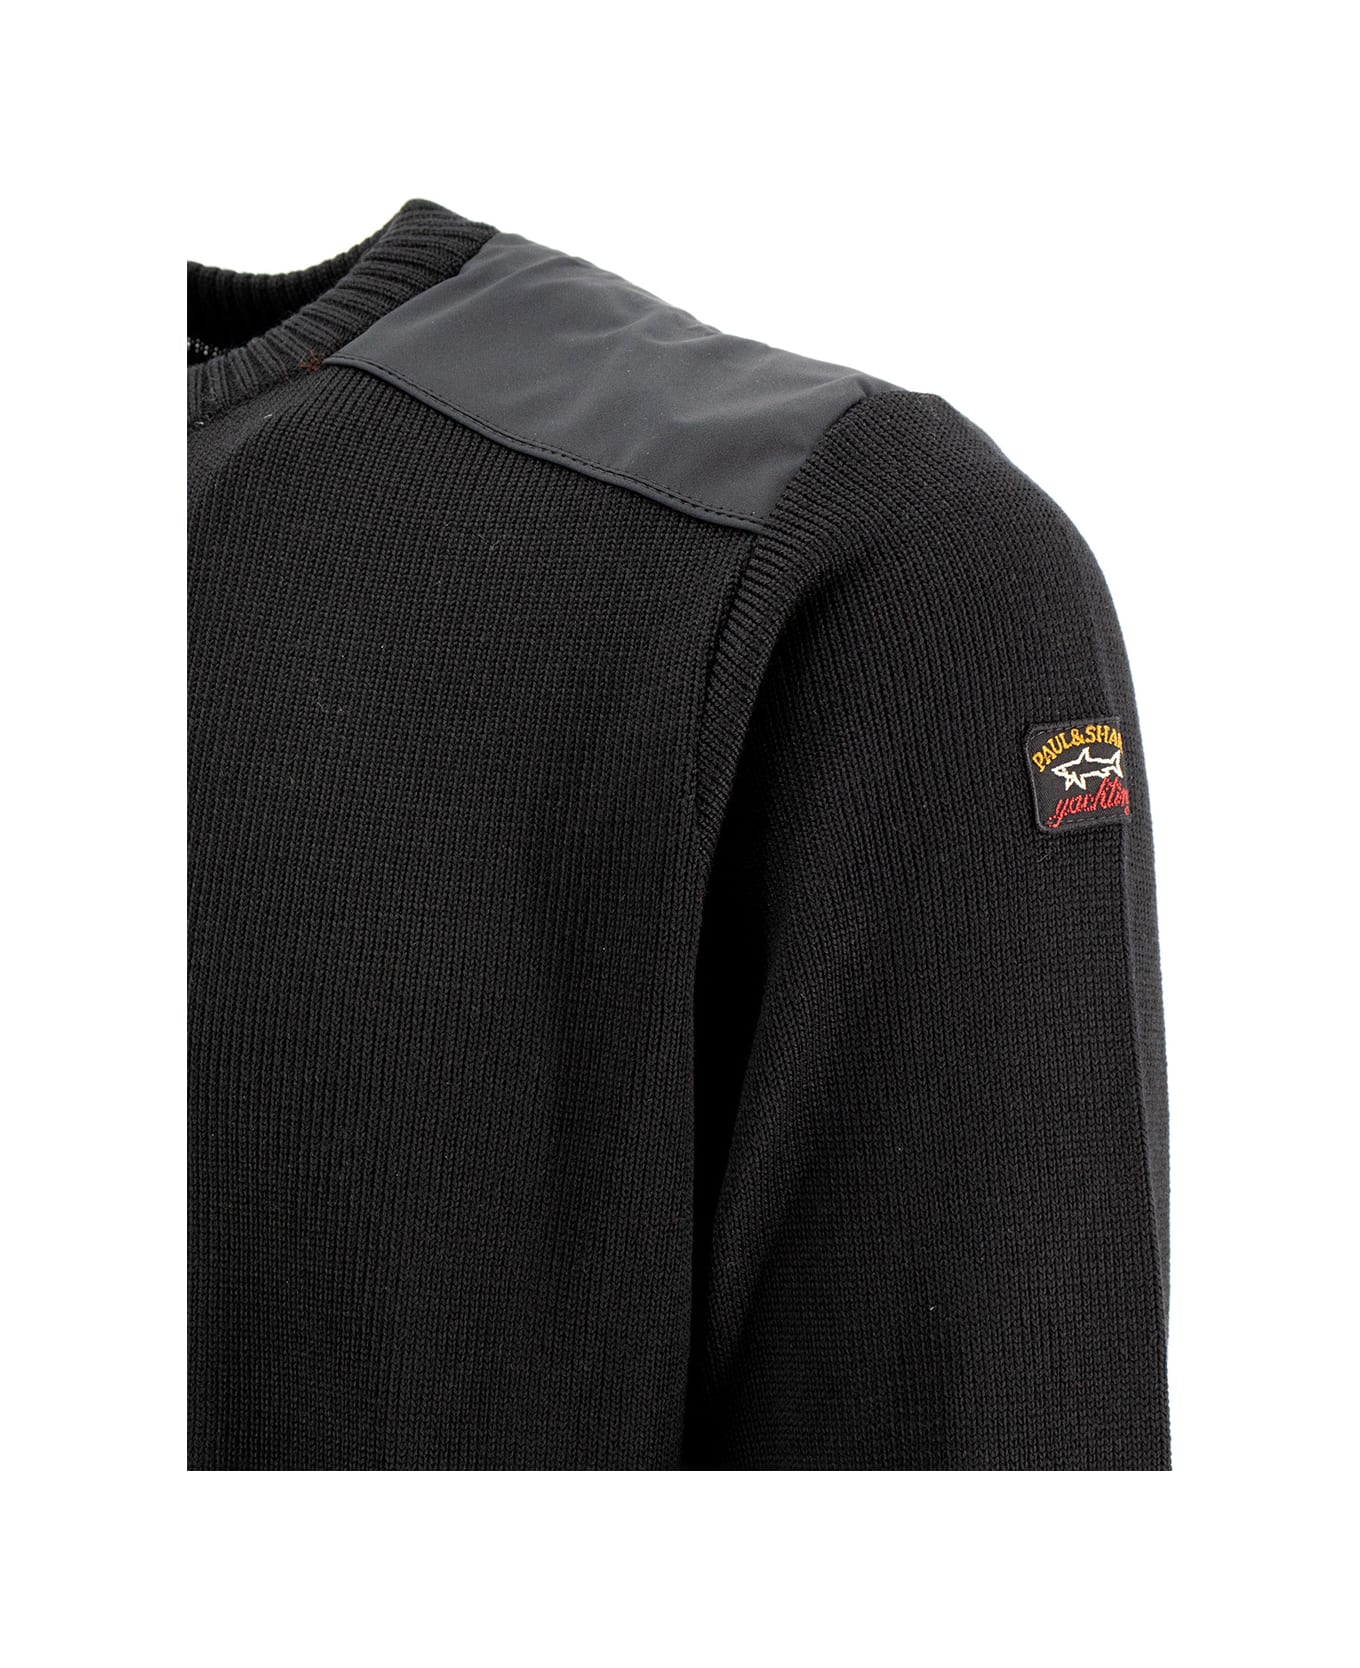 Paul&Shark Sweater - BLACK  BLACK ニットウェア